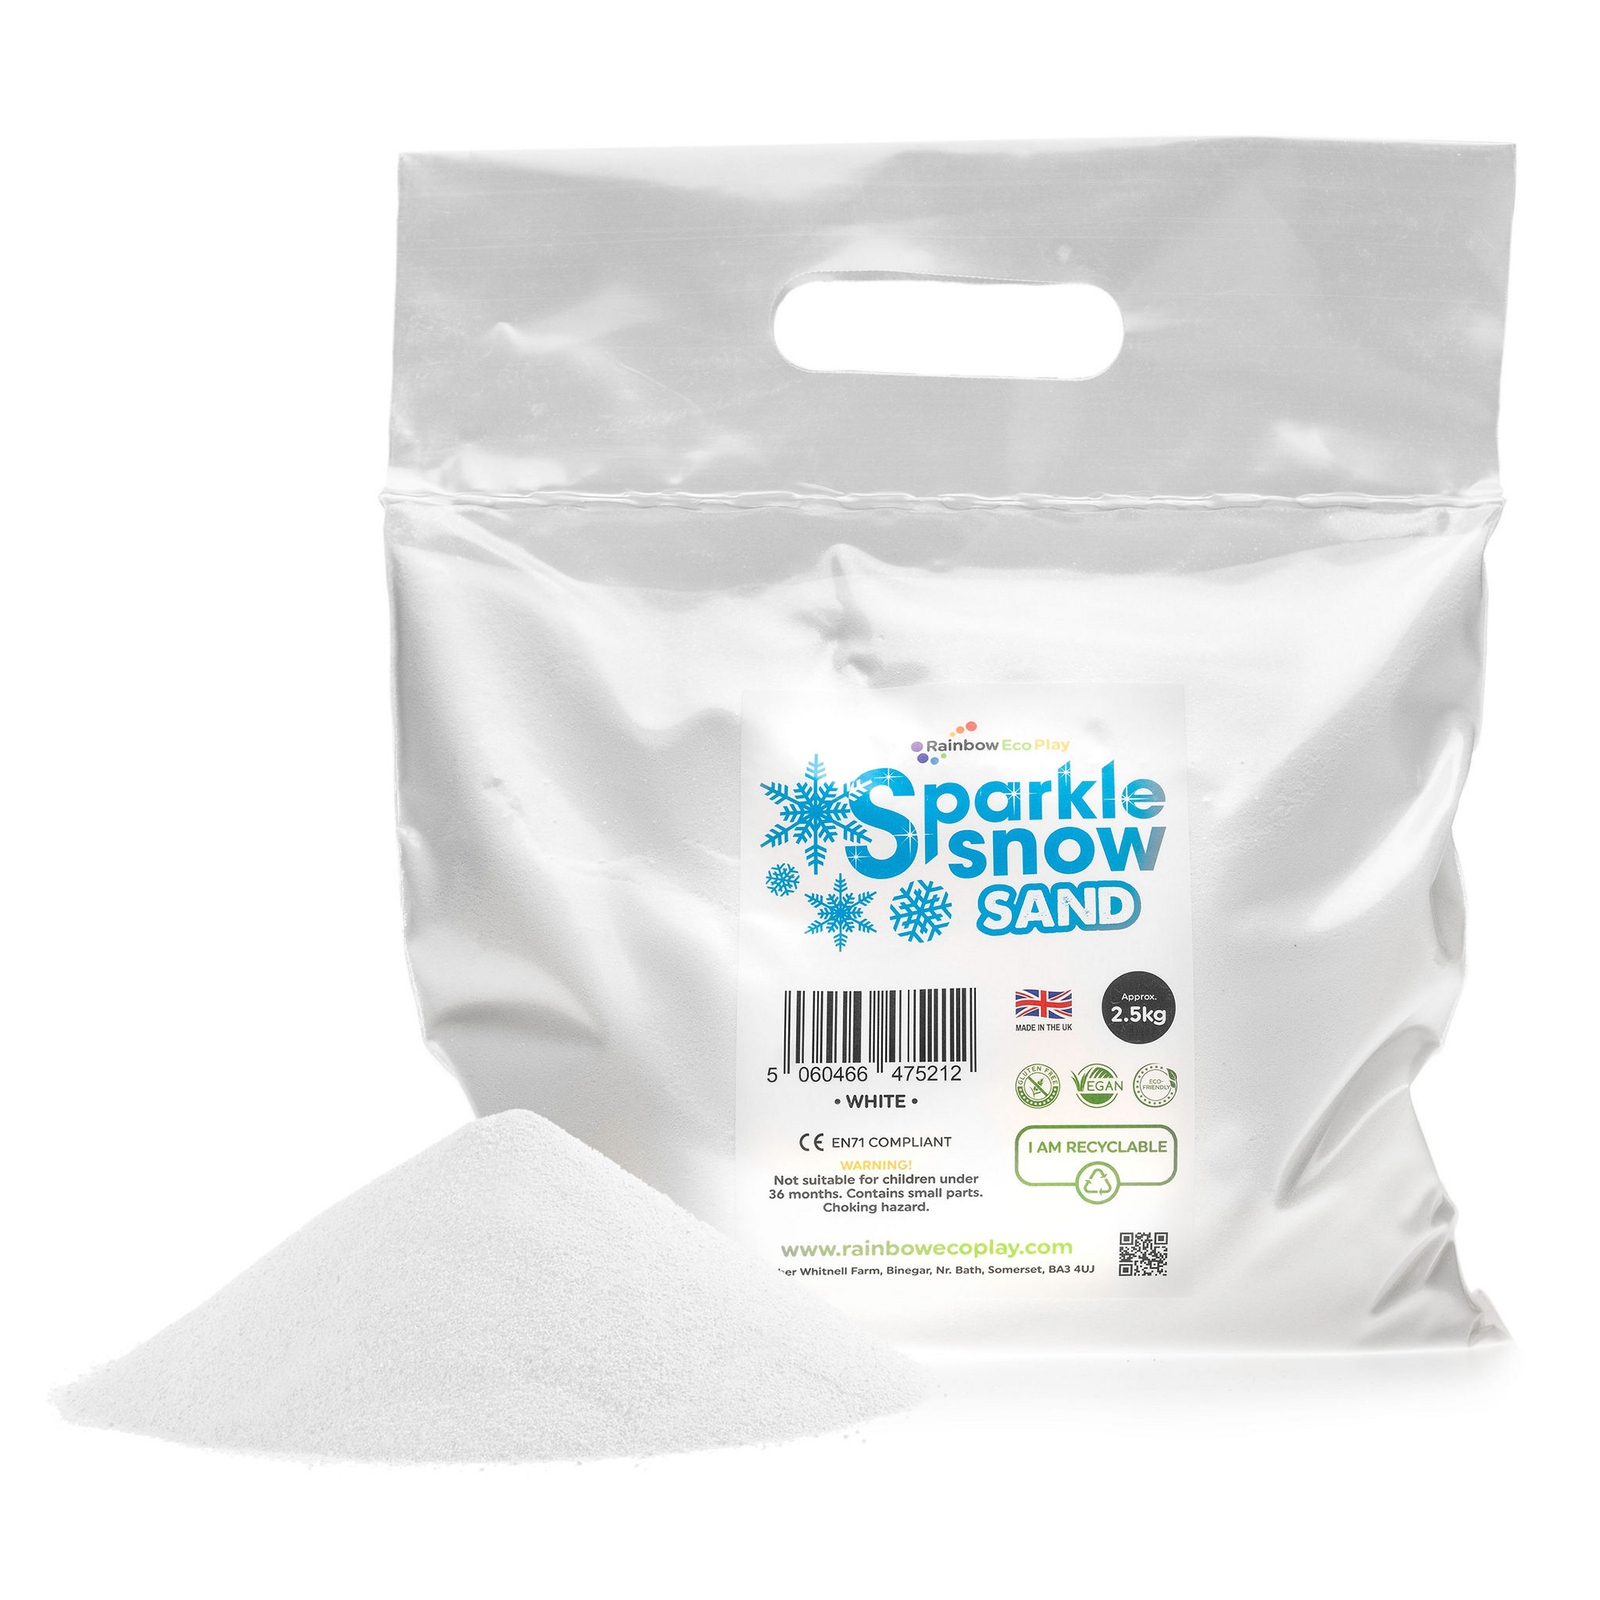 Sparkle Snow Sand - 2.5kg - Each